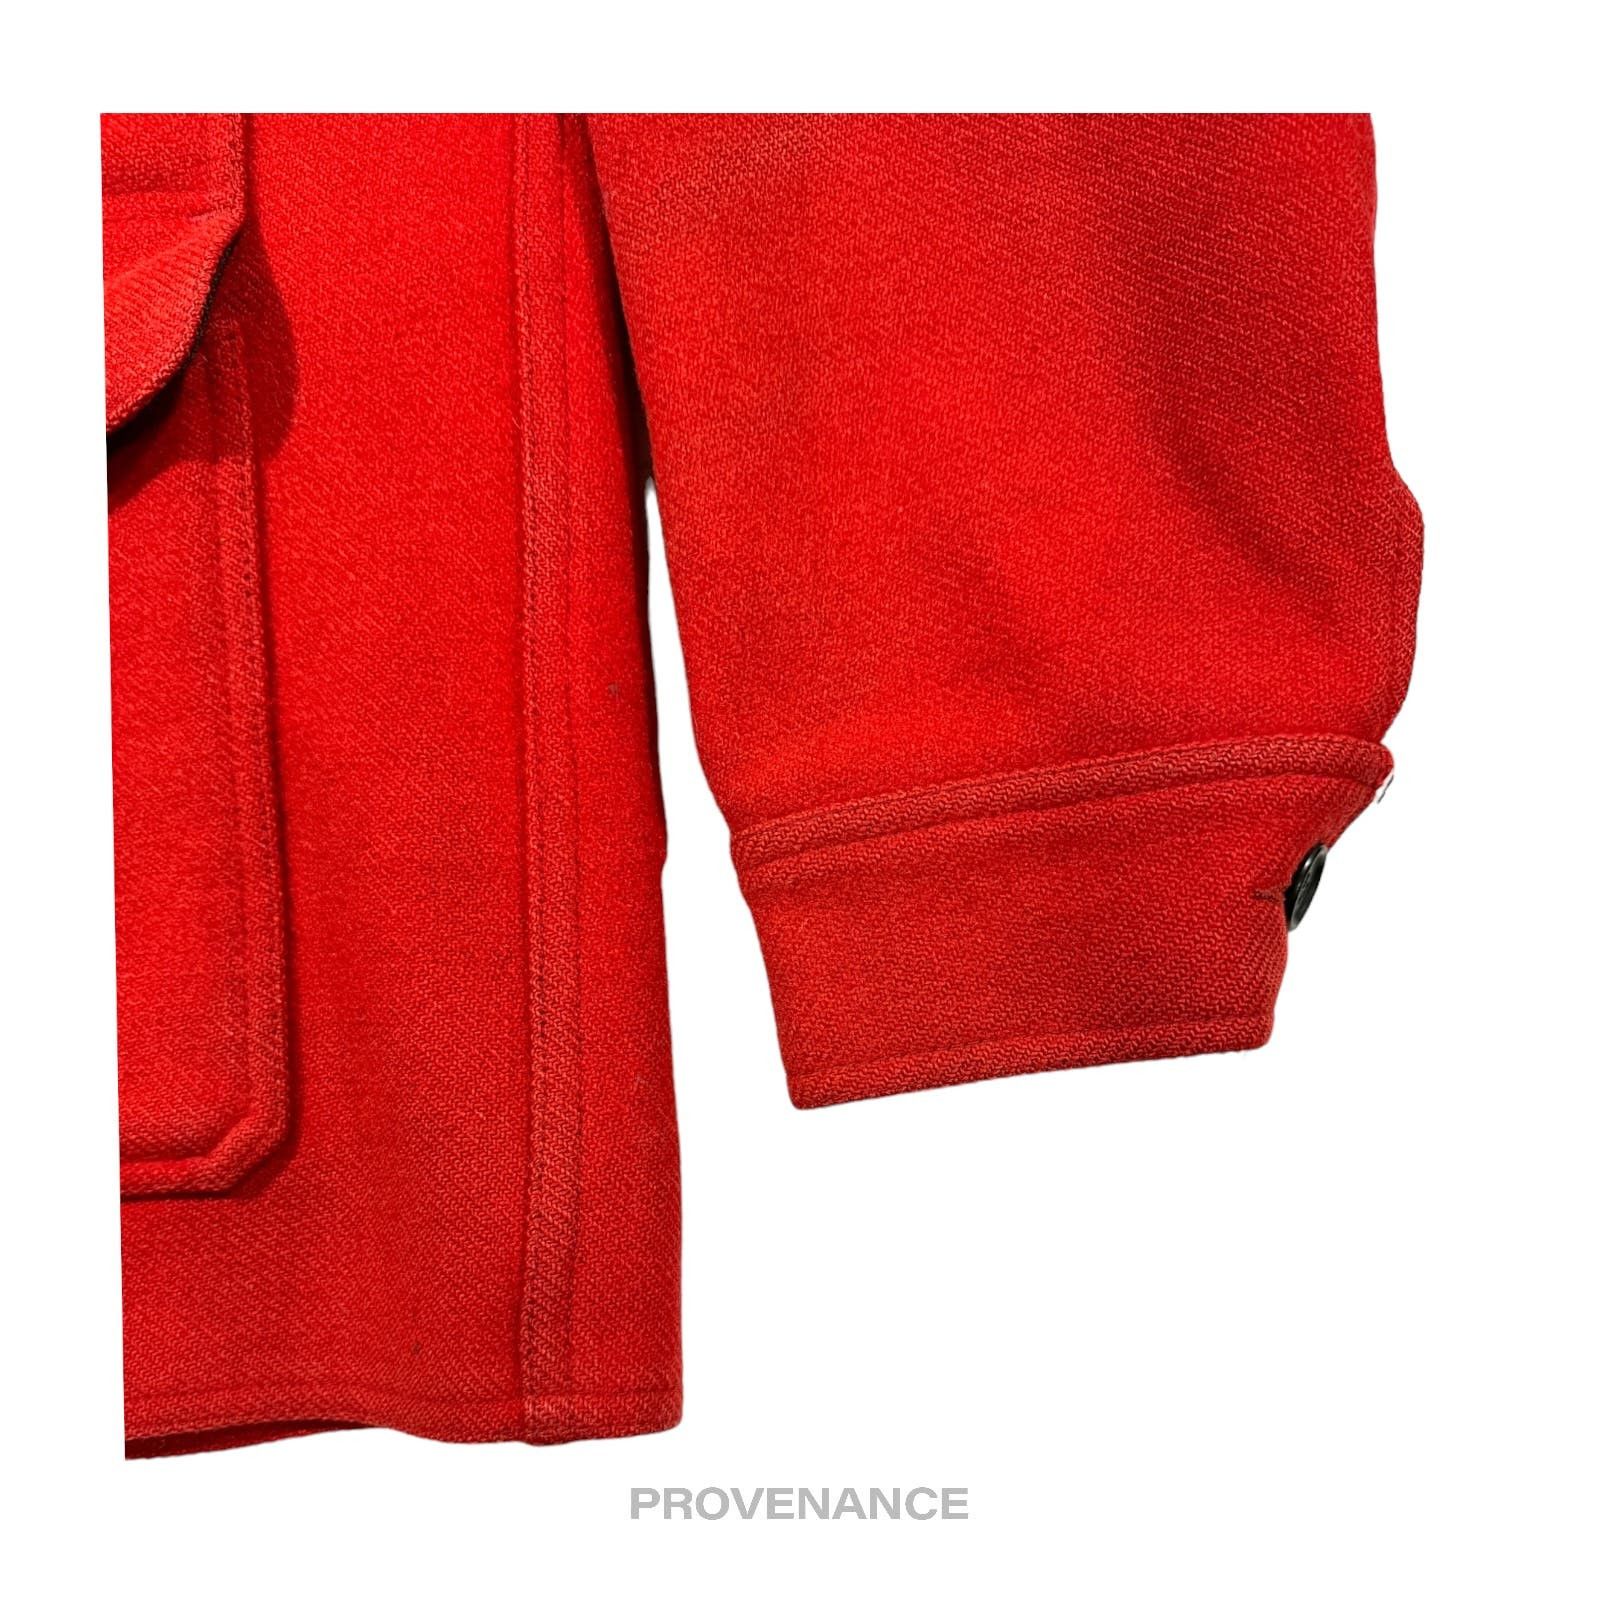 Filson 🔴 Filson Mackinaw Wool Cruiser Jacket - Scarlet Red 42 M Size US M / EU 48-50 / 2 - 6 Thumbnail